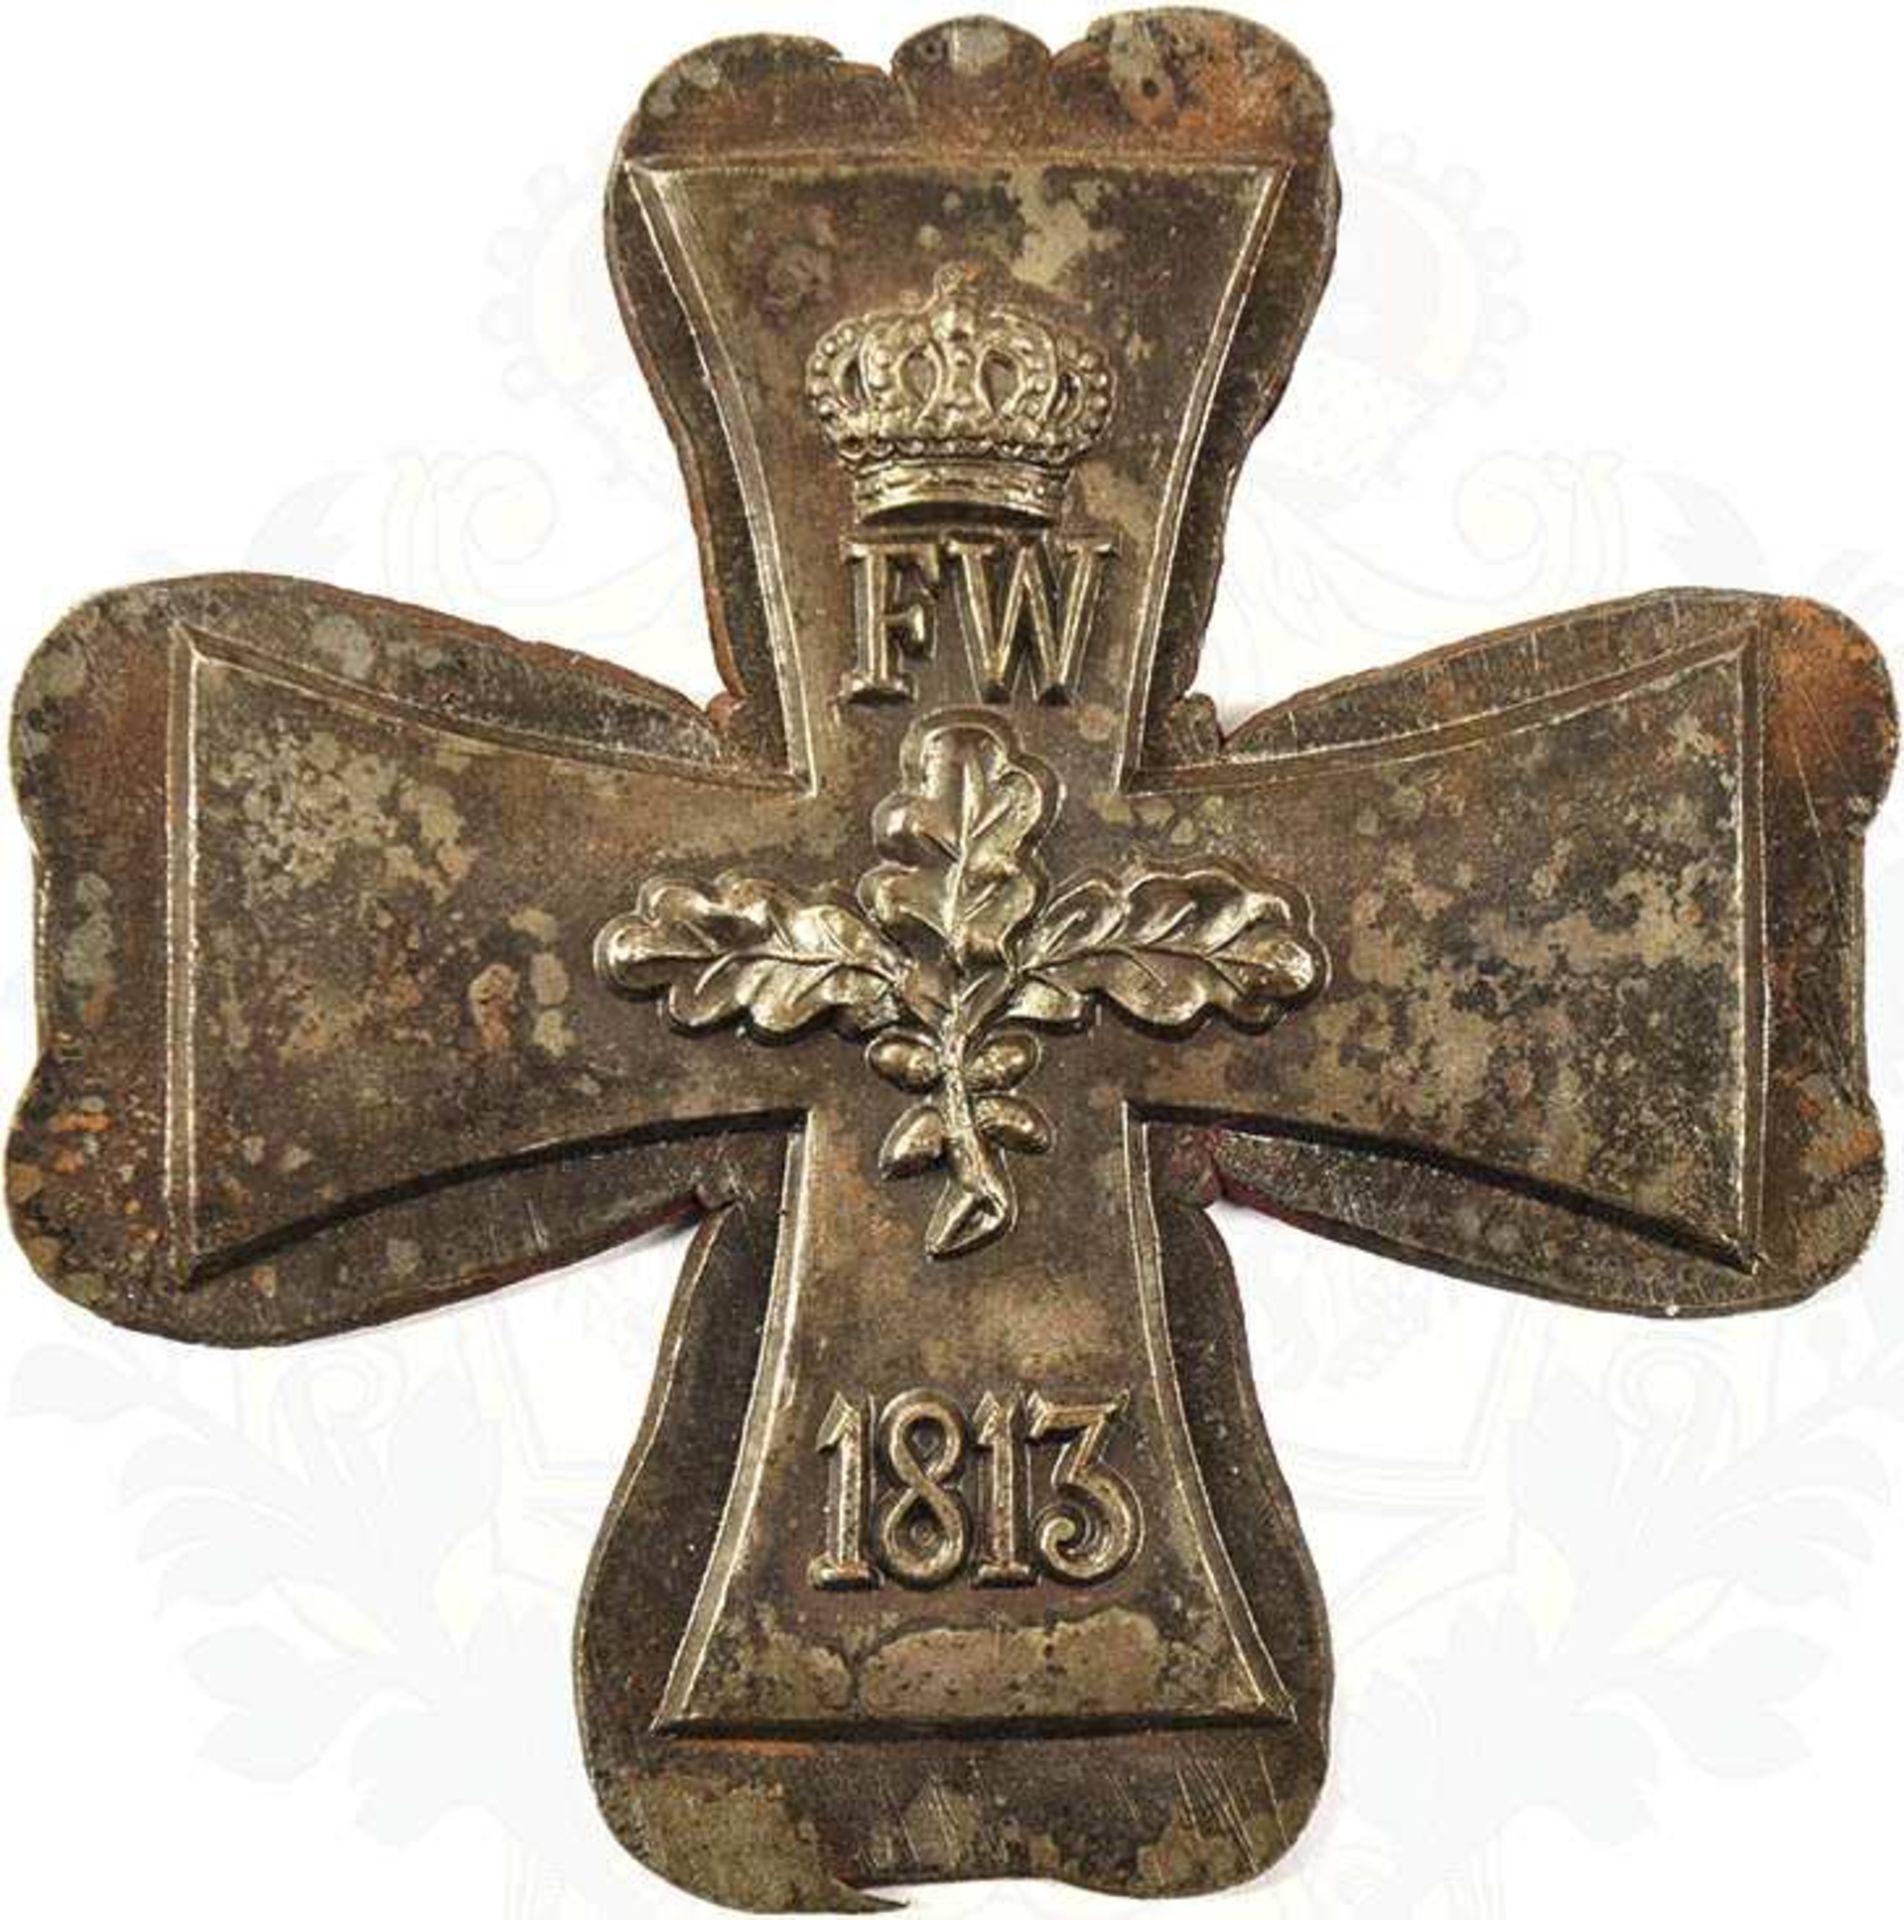 KERN GROßKREUZ EK 1870, feiner Eisen-Guss, noch nicht ausgesägter Rohling, verm. f. d. Verwendung in